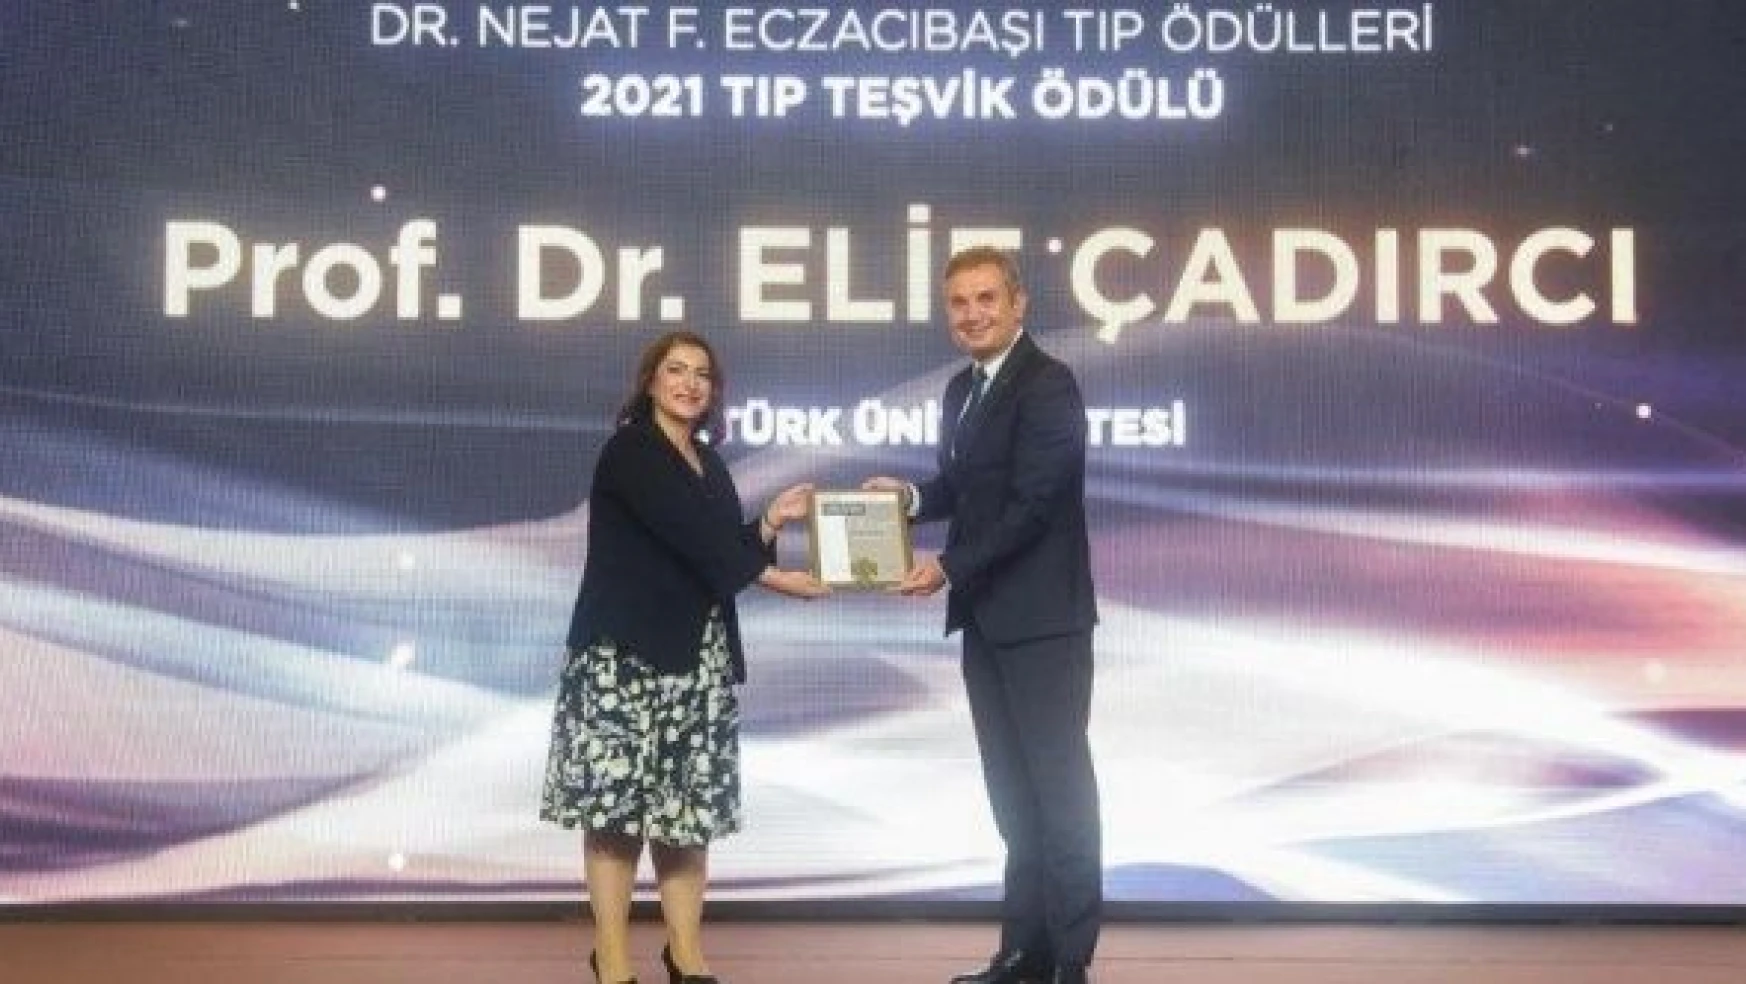 Prof. Dr. Elif Çadırcı 2021 Tıp Teşvik Ödülü'nün sahibi oldu